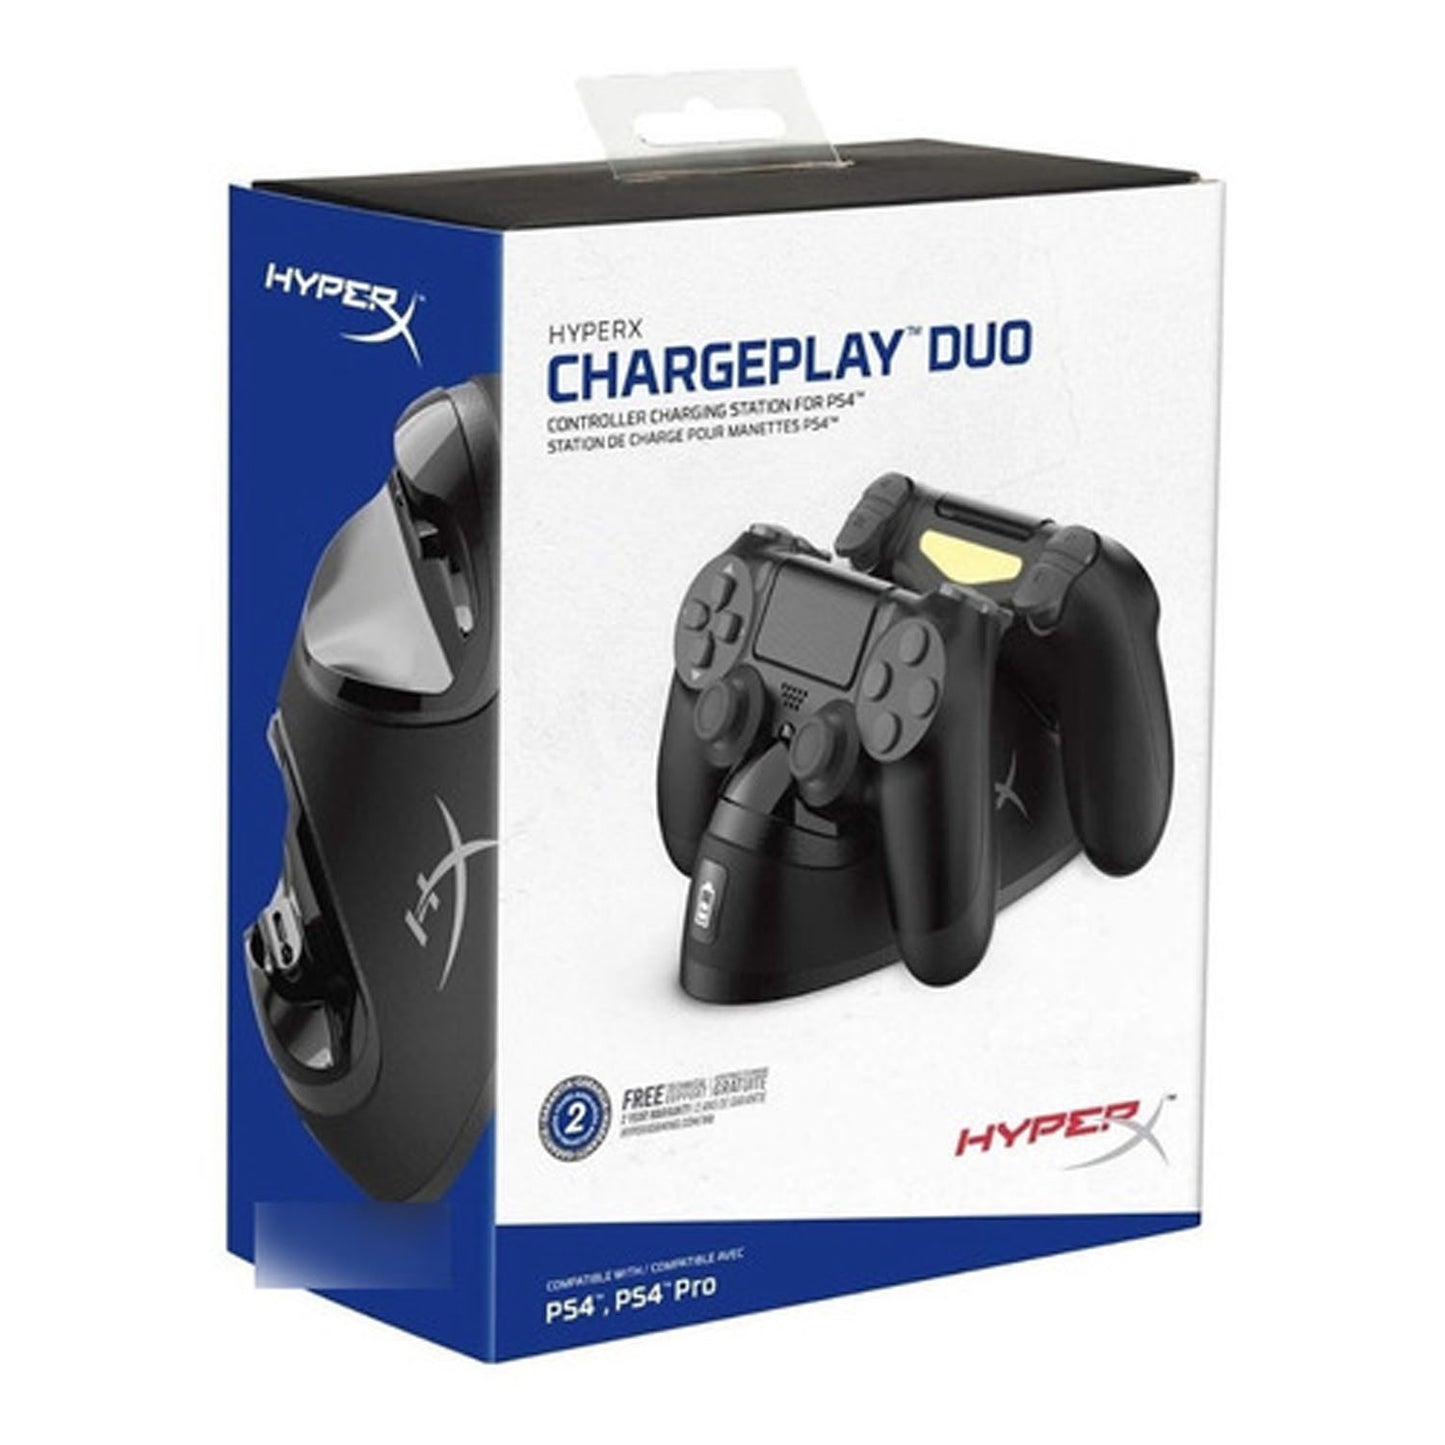 Cargador De Controles Ps4 Hyperx Chargeplay Duo -crazygames-